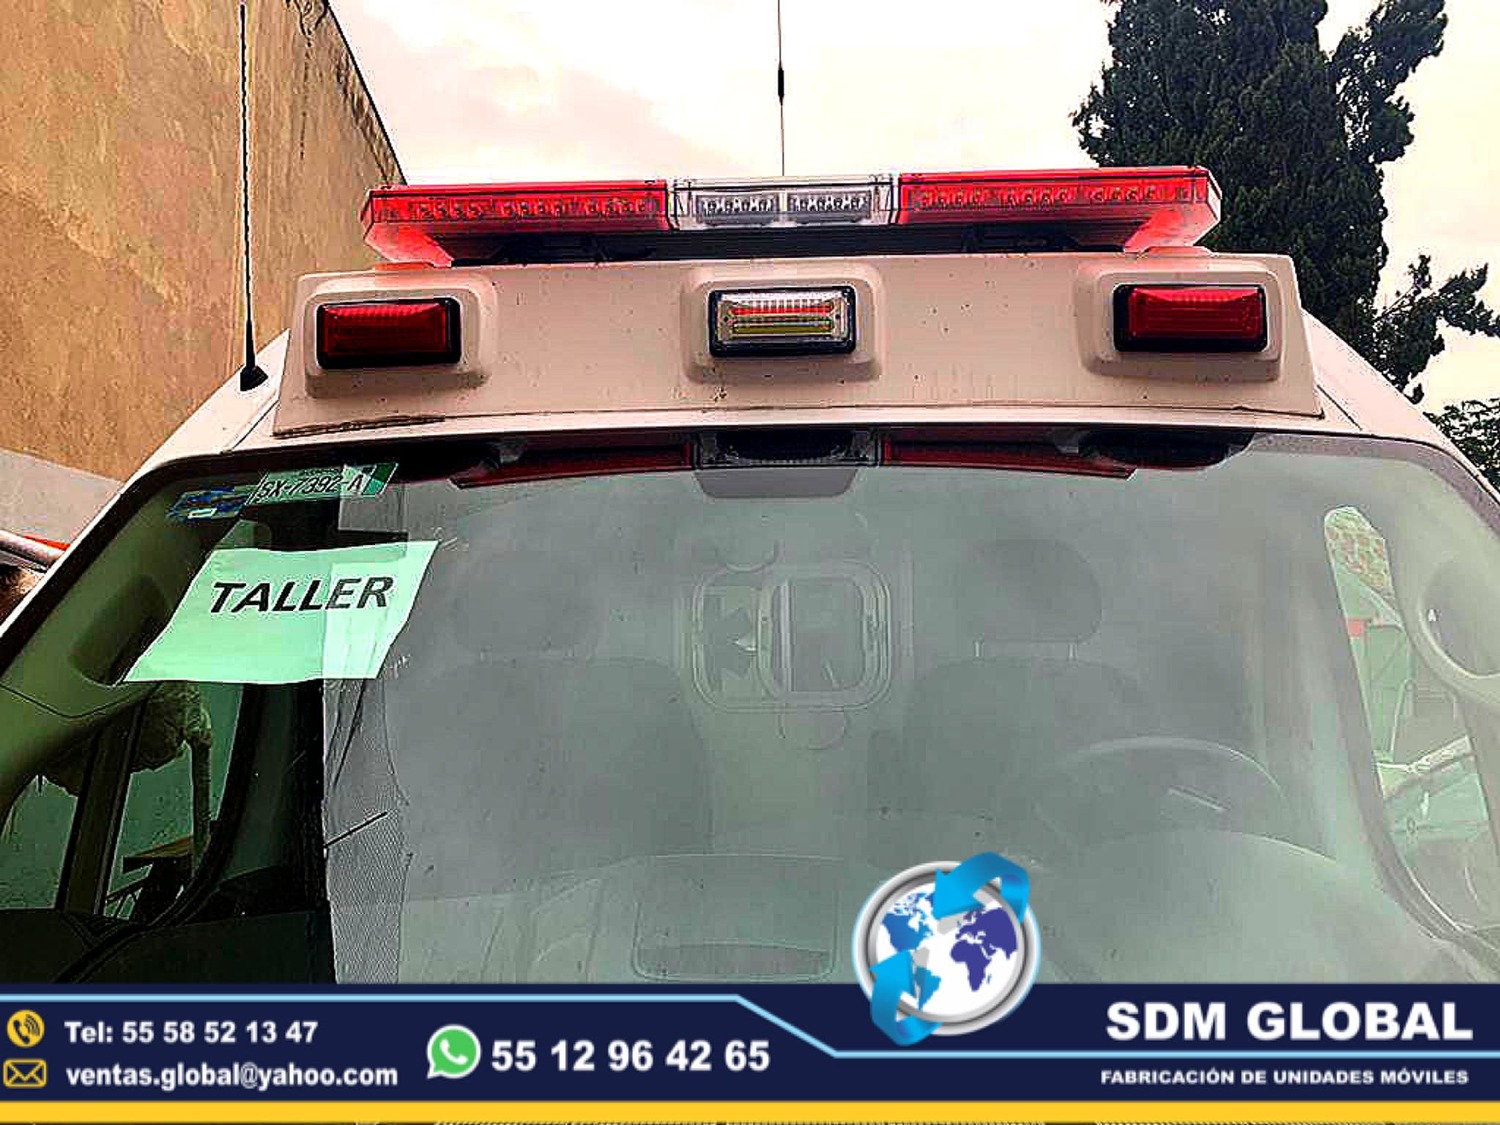 <span style="font-weight: bold;">Equipamiento de Ambulancias de traslado en SDM Global Mexico</span><br>